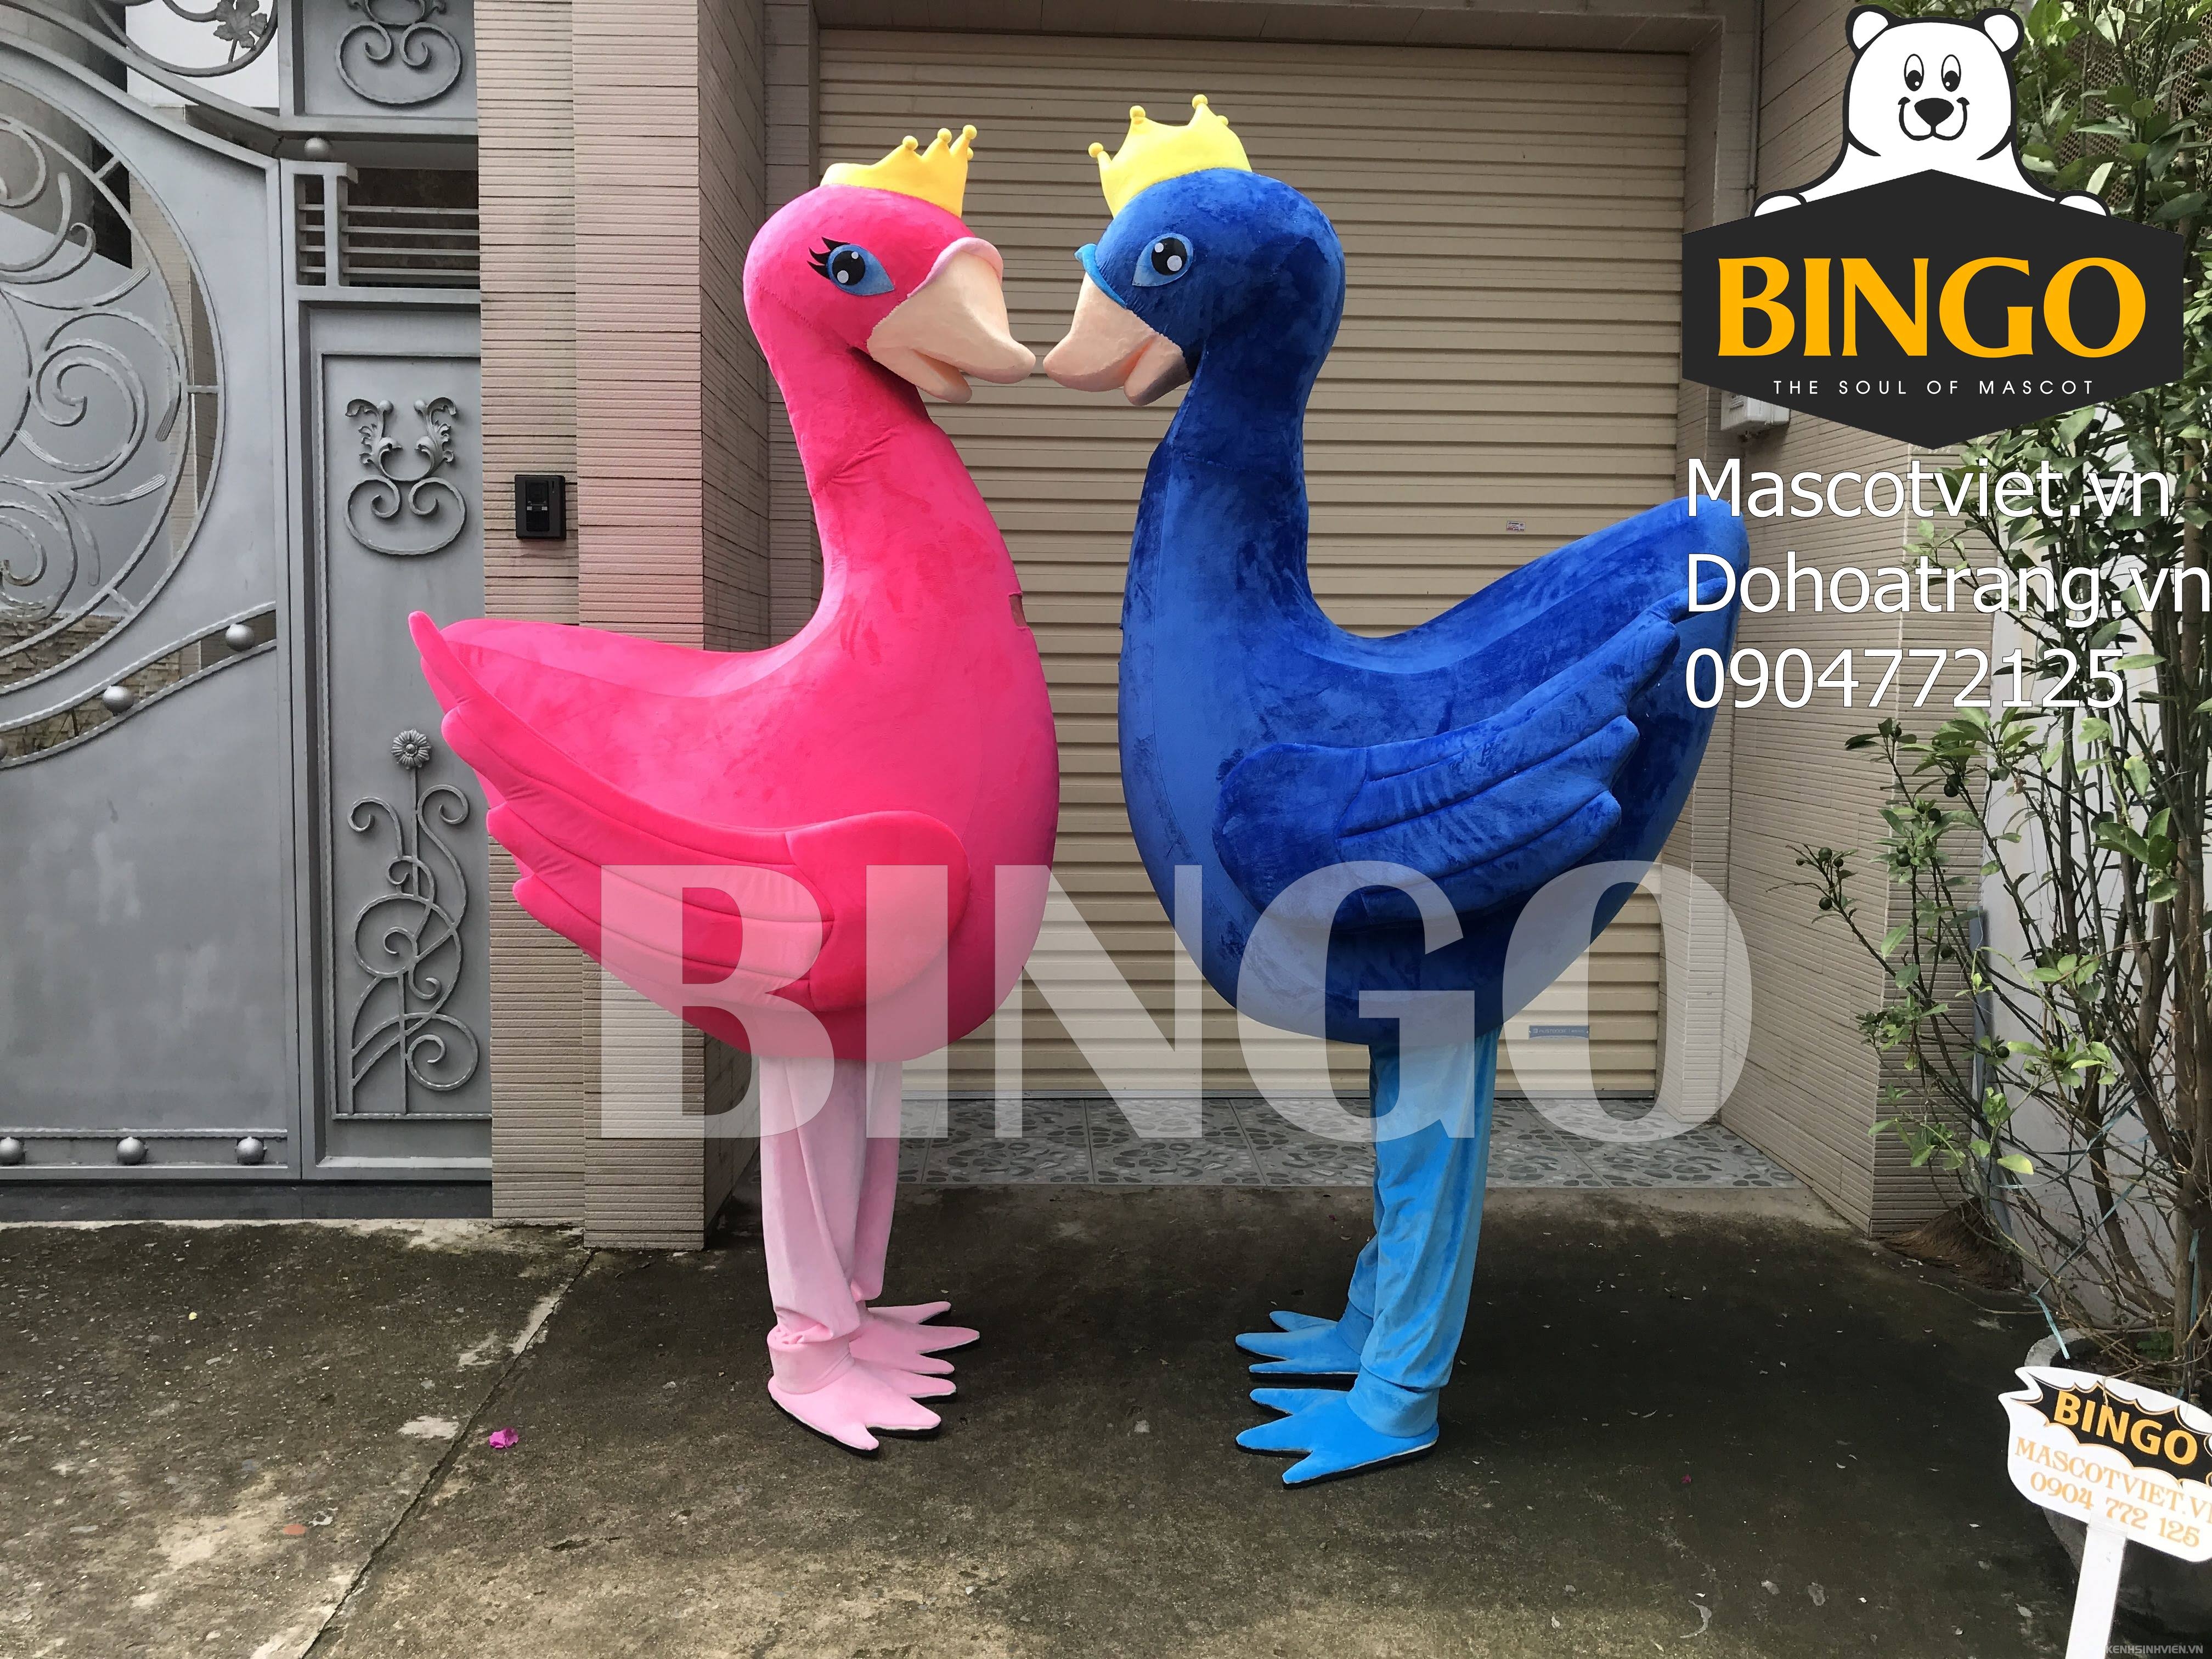 mascot-chim-thien-nga-bingo-costumes-0904772125-2-.jpg